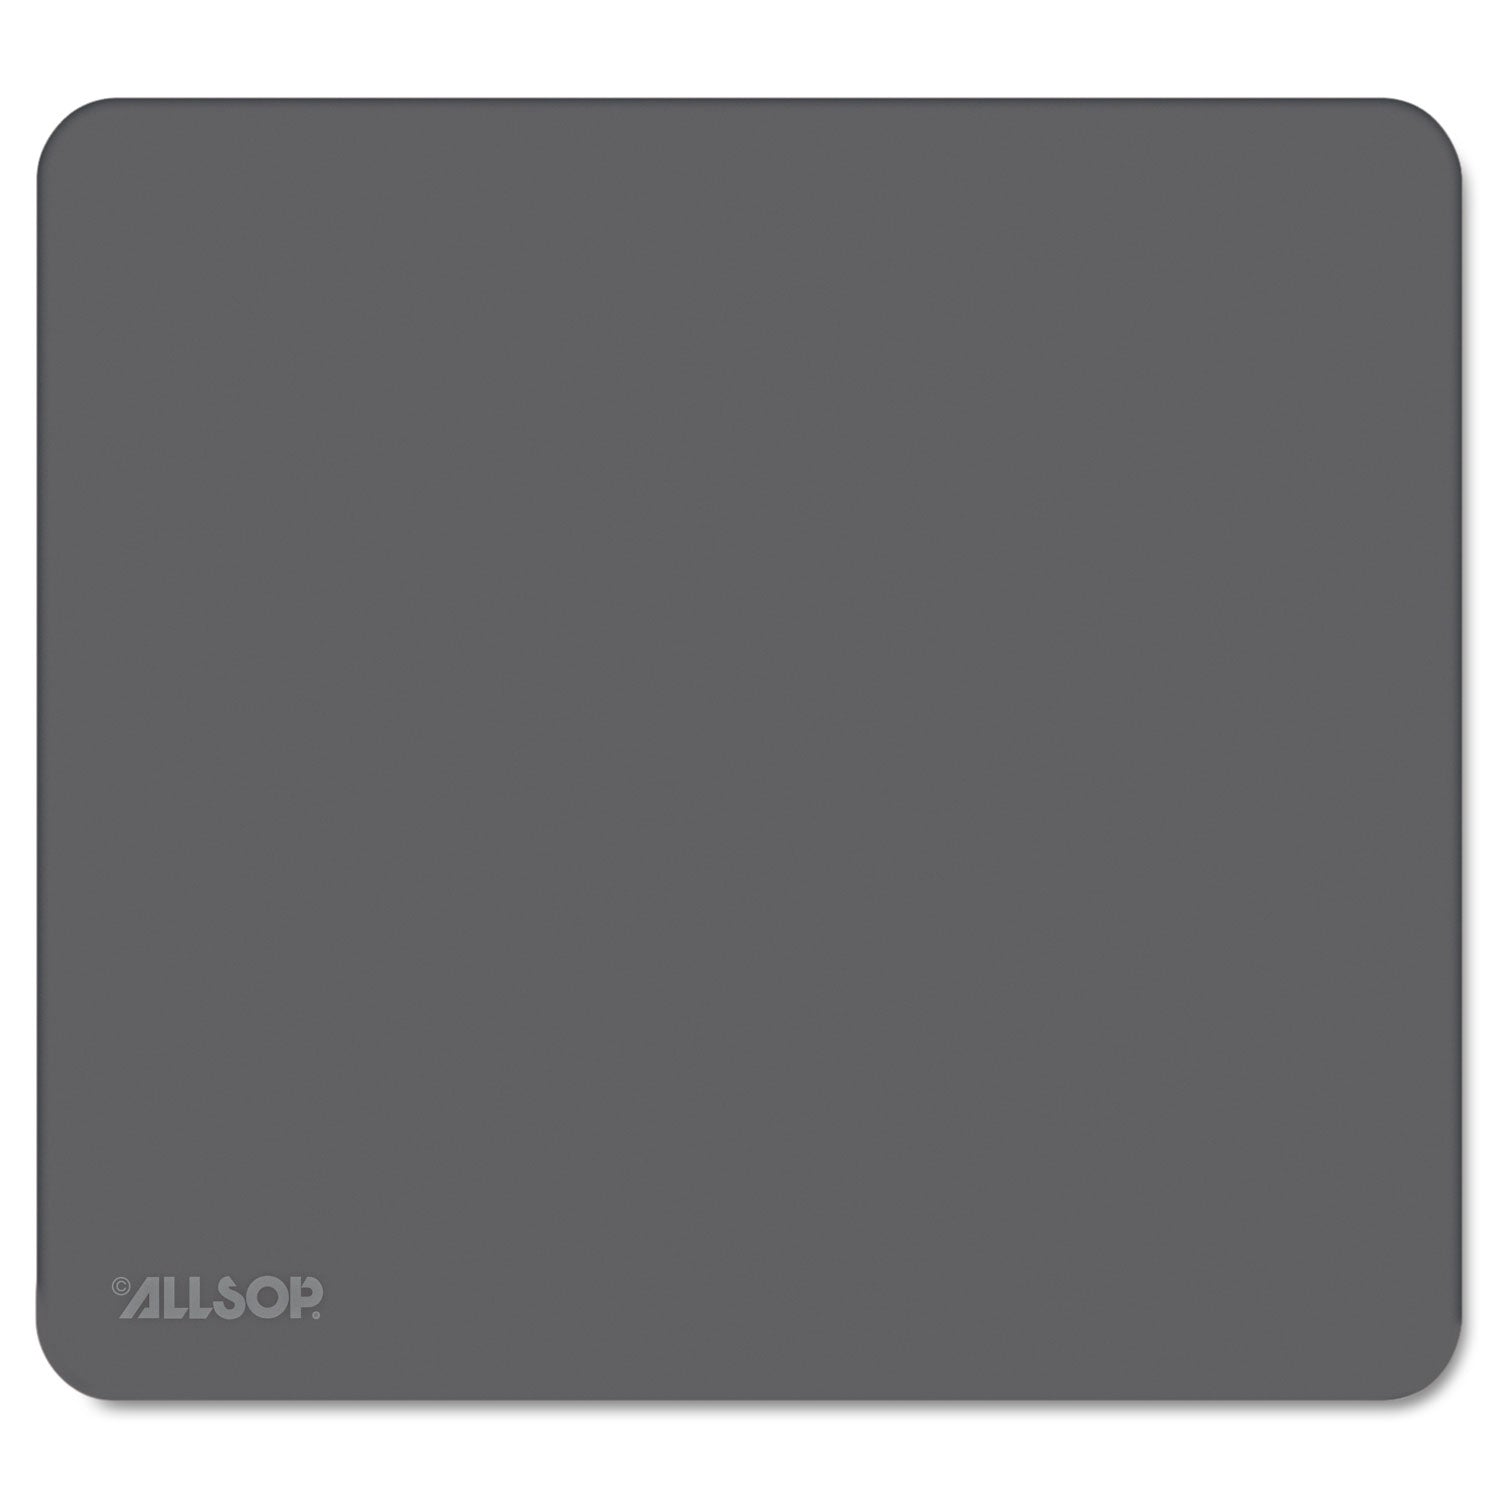 Accutrack Slimline Mouse Pad, 8.75 x 8, Graphite - 